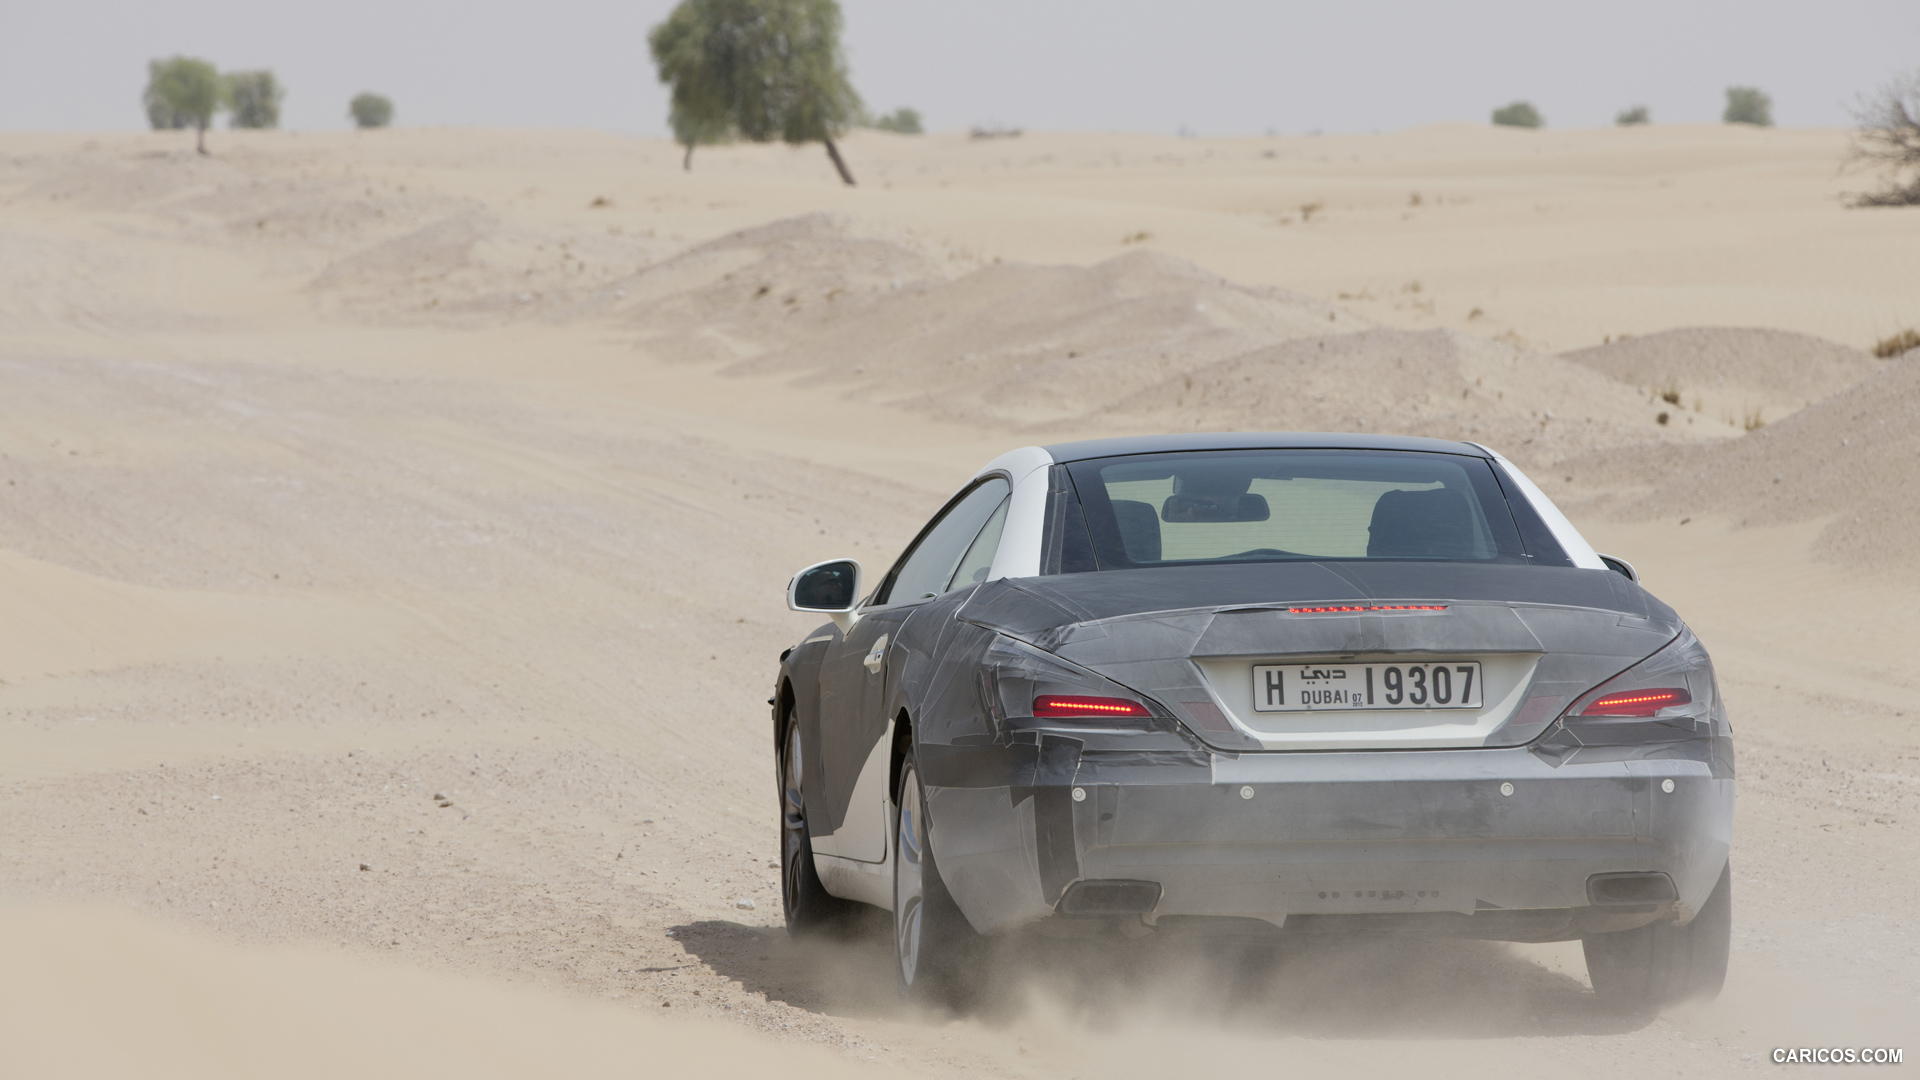 2013 Mercedes-Benz SL-Class Desert Testing - , #146 of 147